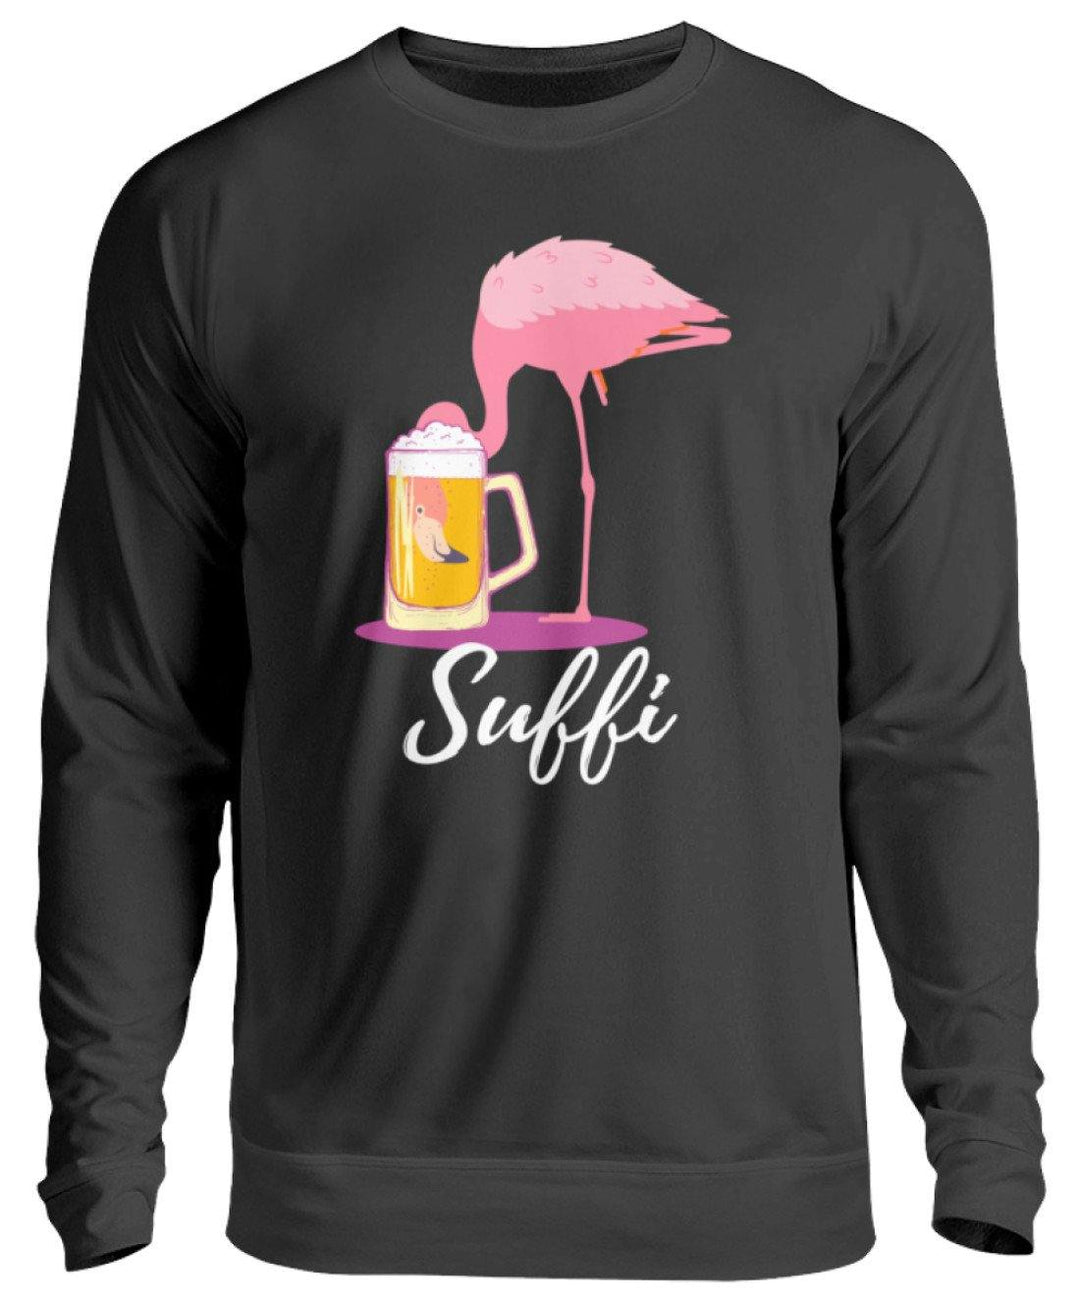 Flamingo Suffi - Words on Shirt  - Unisex Pullover - Words on Shirts Sag es mit dem Mittelfinger Shirts Hoodies Sweatshirt Taschen Gymsack Spruch Sprüche Statement